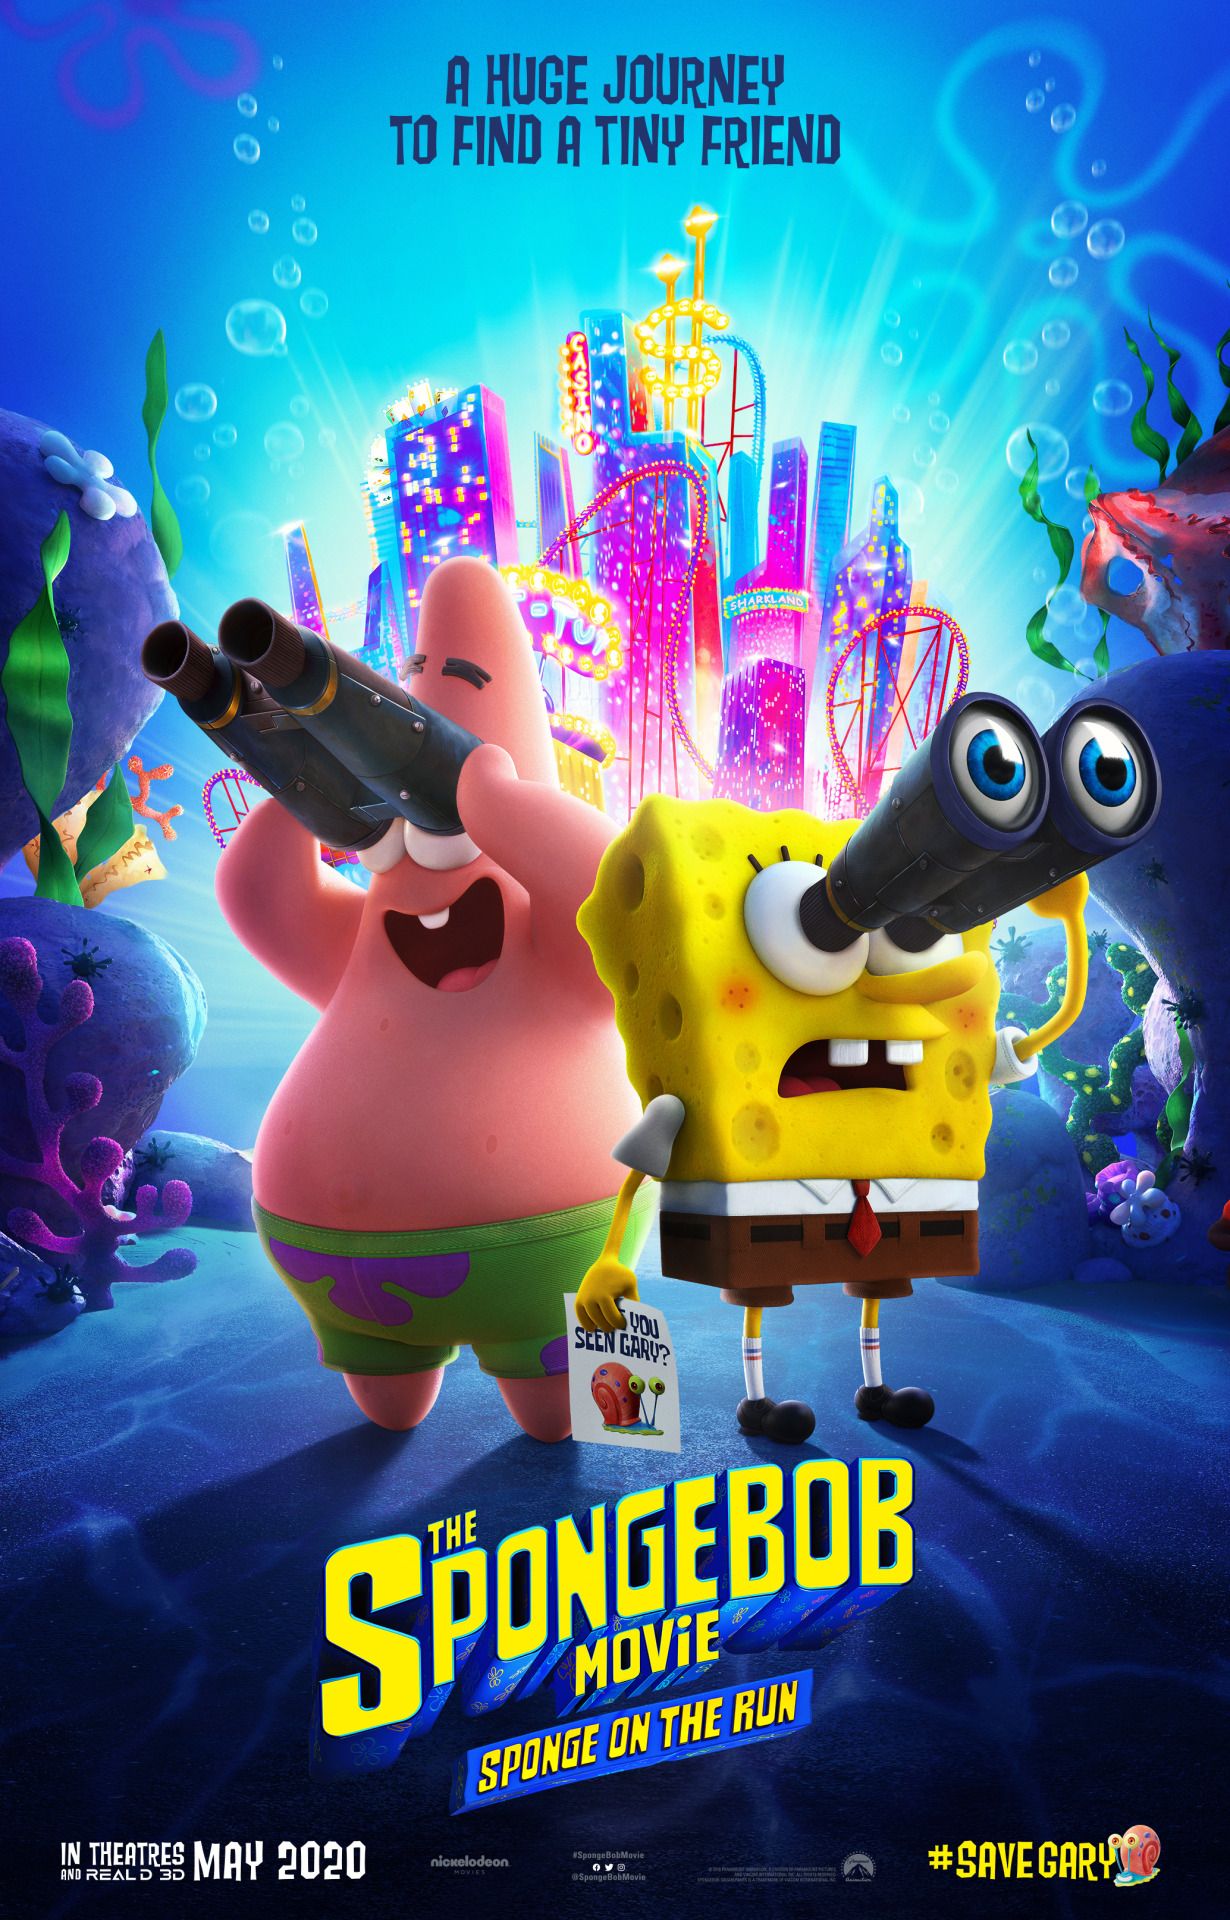 The SpongeBob Movie: Sponge on